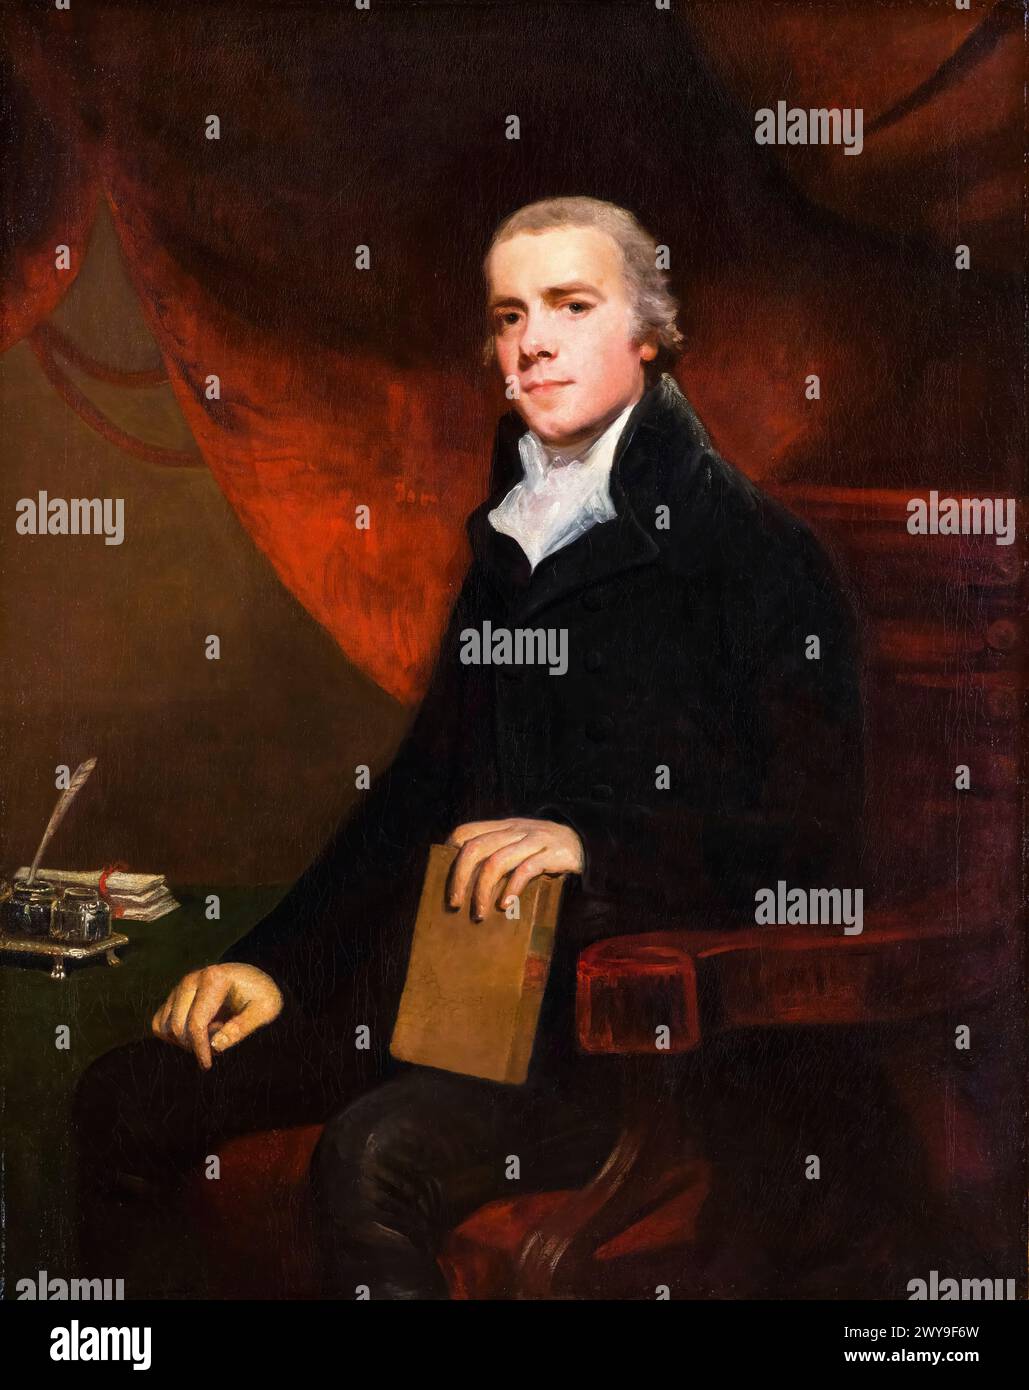 William Grenville, 1er baron Grenville (1759-1834), homme politique conservateur et premier ministre du Royaume-Uni, 1806-1807, portrait peint à l'huile sur toile par John Hoppner, avant 1810 Banque D'Images